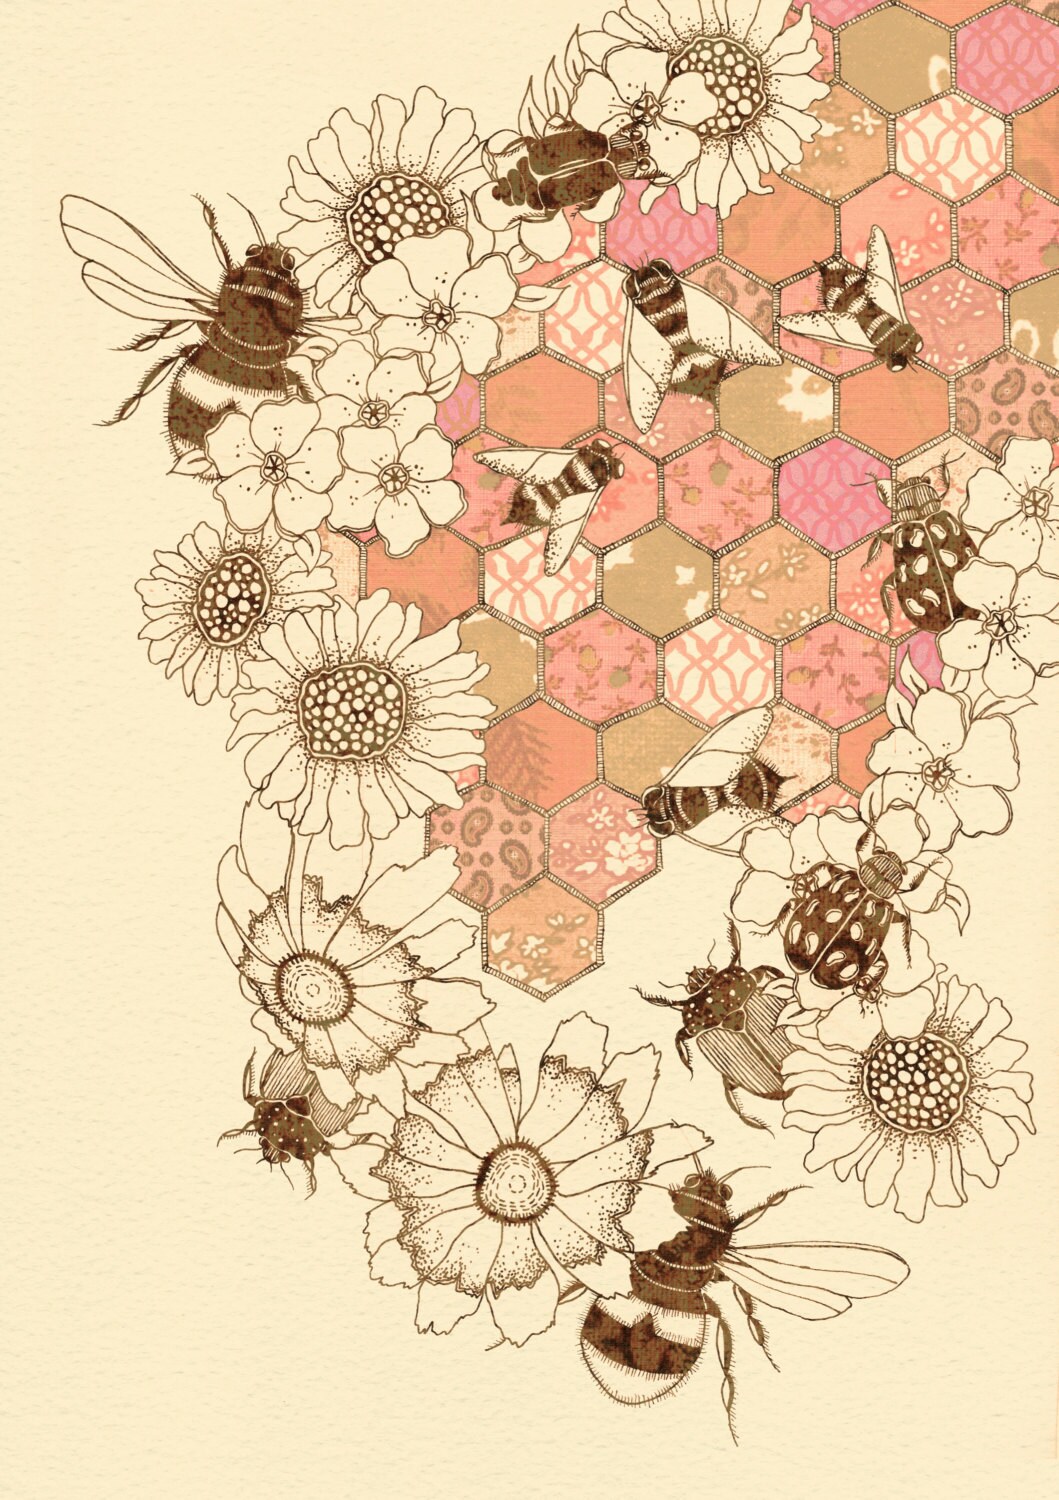 A Quilt Of Honey Bees 12" x 16" - Buttermoths